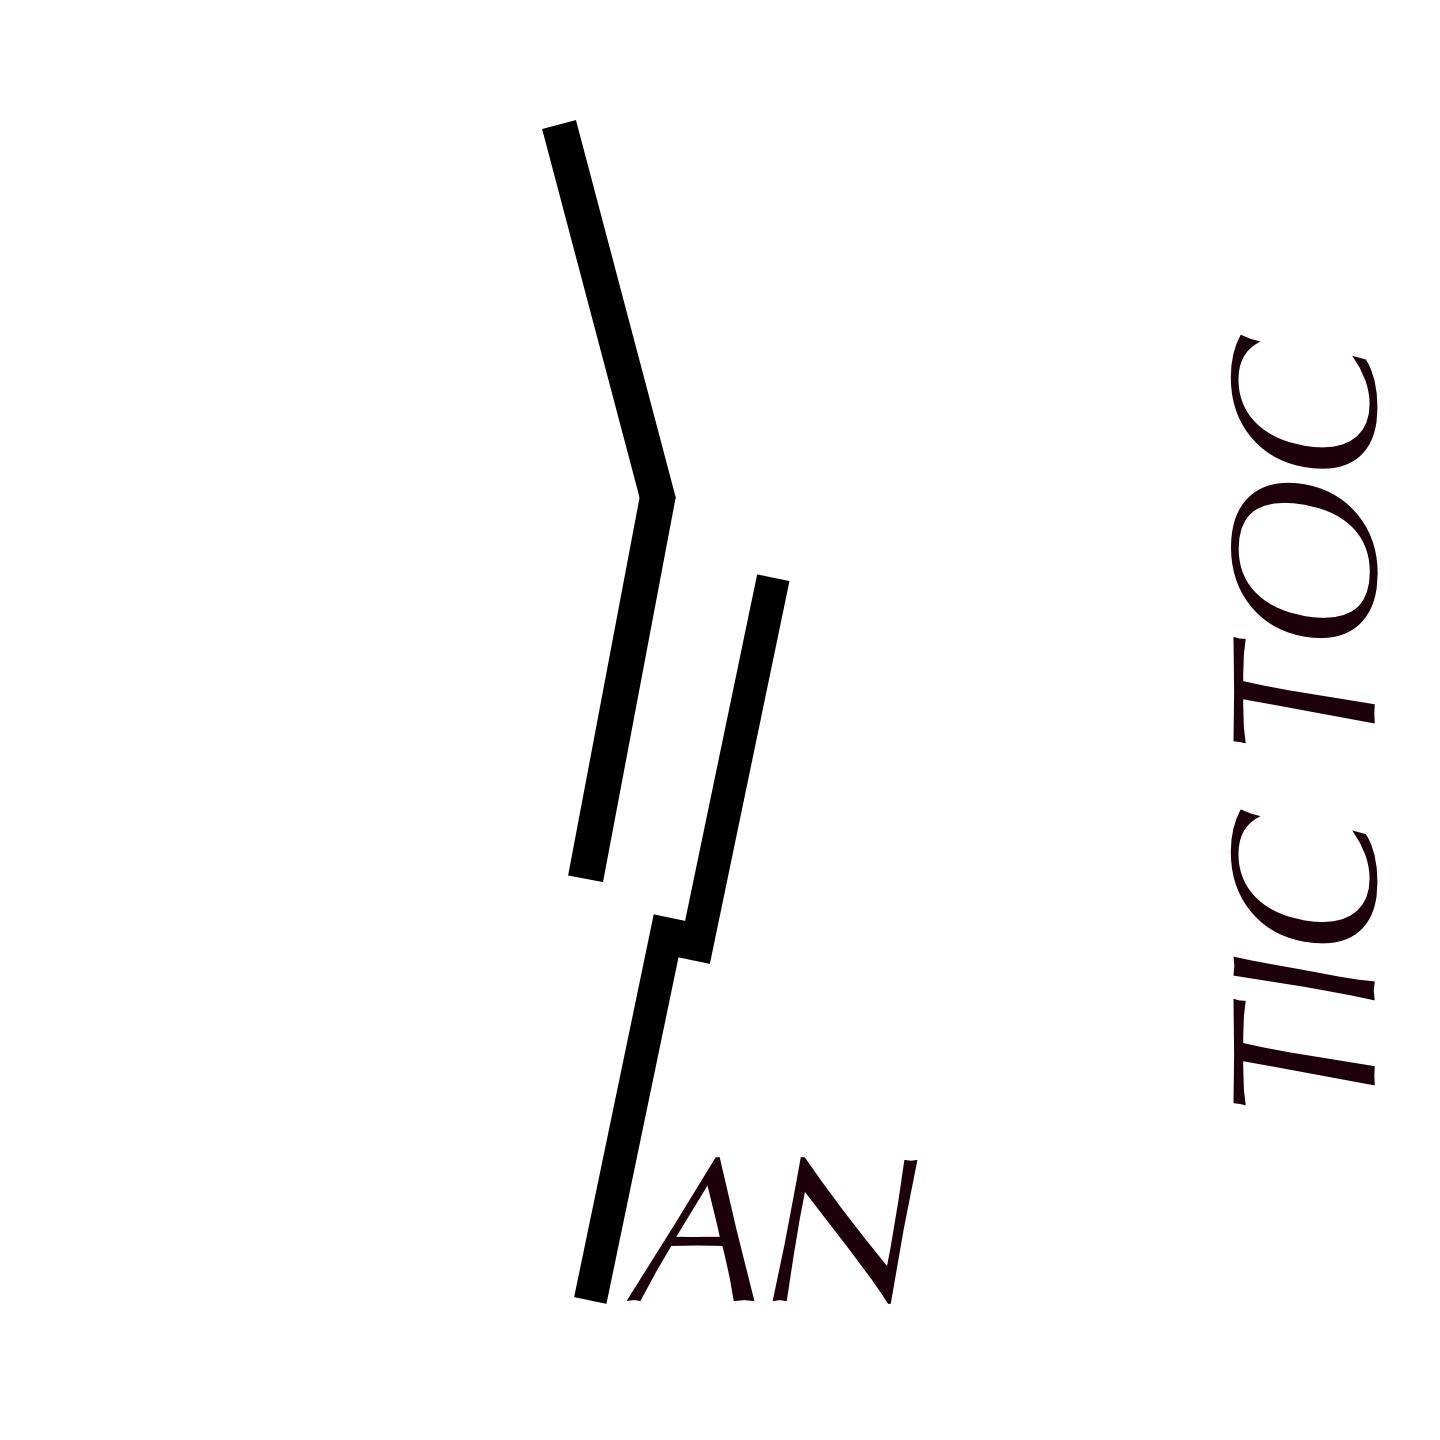 Yvi Slan - Tic toc